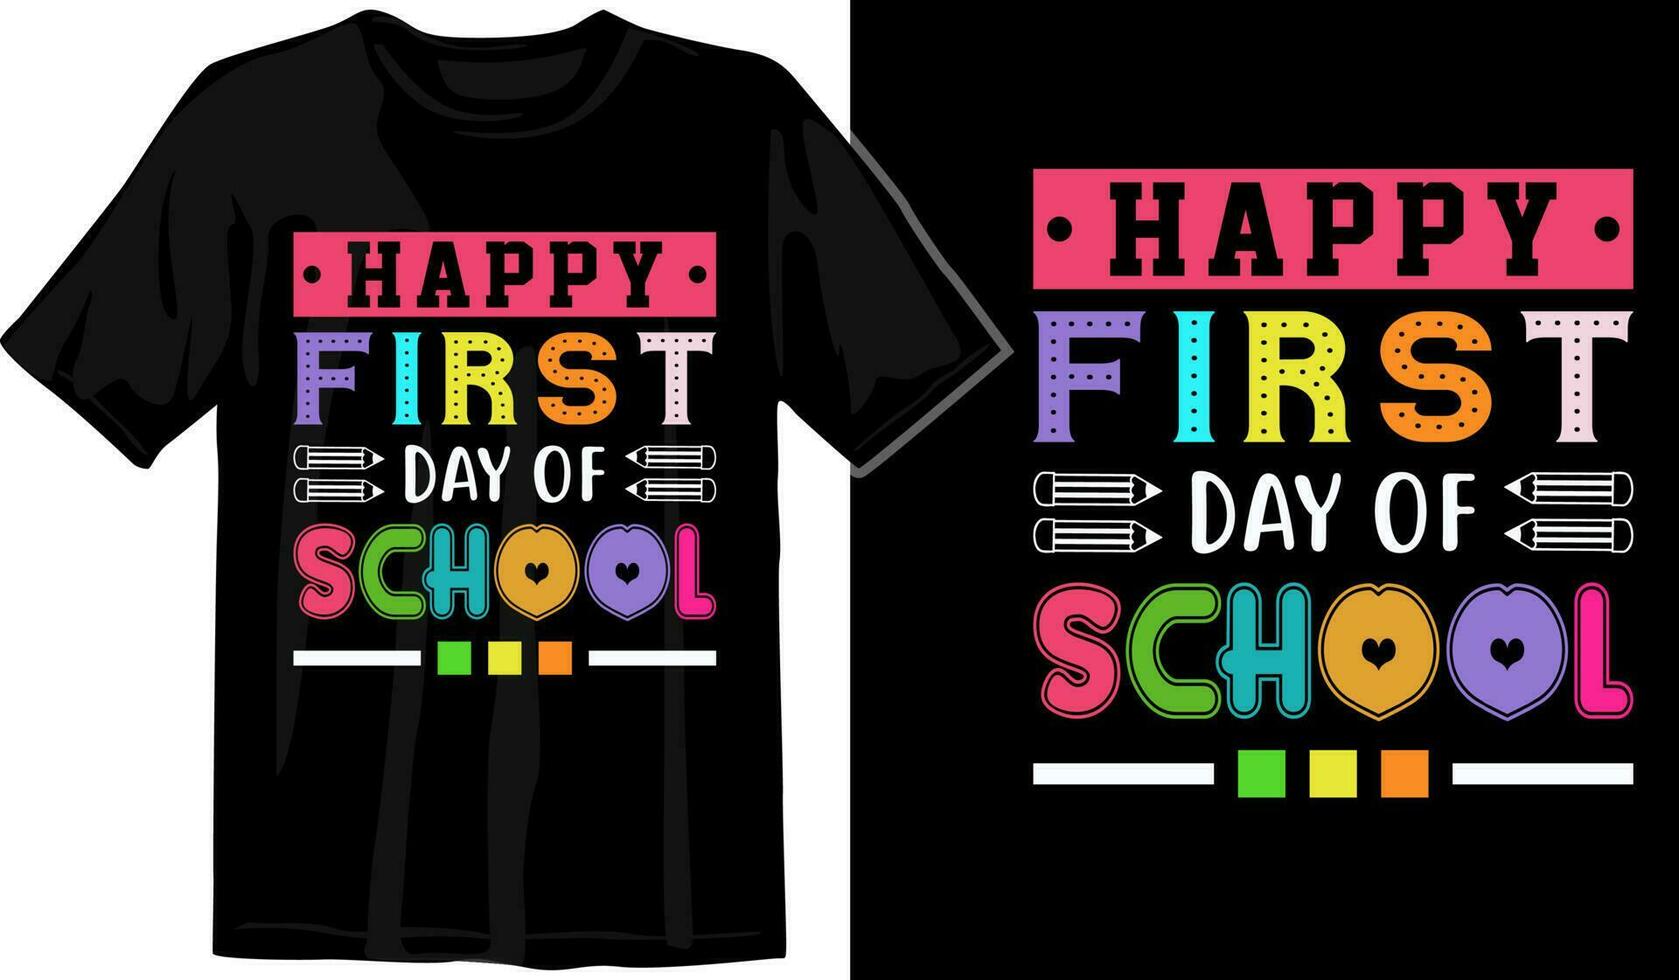 herzlich willkommen zurück zu Schule schön Kinder Typografie t Hemd Design - - zurück zu Schule t Hemd bereit zum drucken Profi Vektor